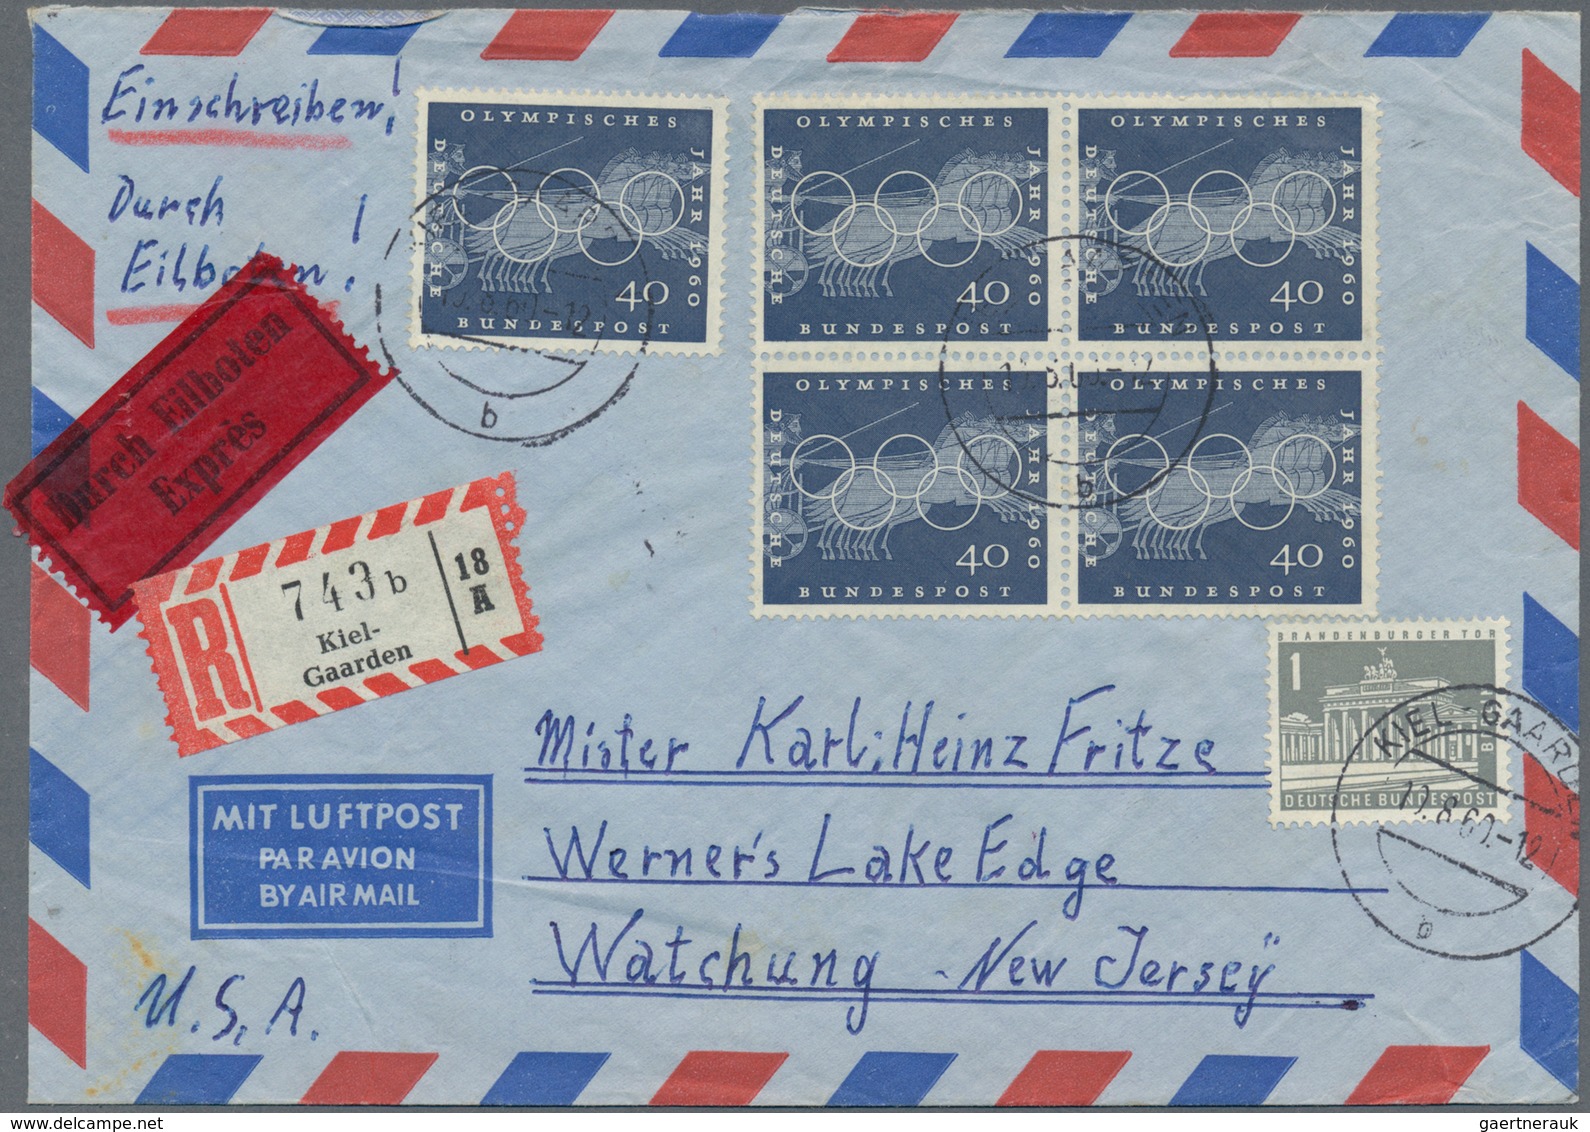 Bundesrepublik Deutschland: 1955/1995, Post nach Übersee, vielseitige Partie von ca. 68 Briefen und